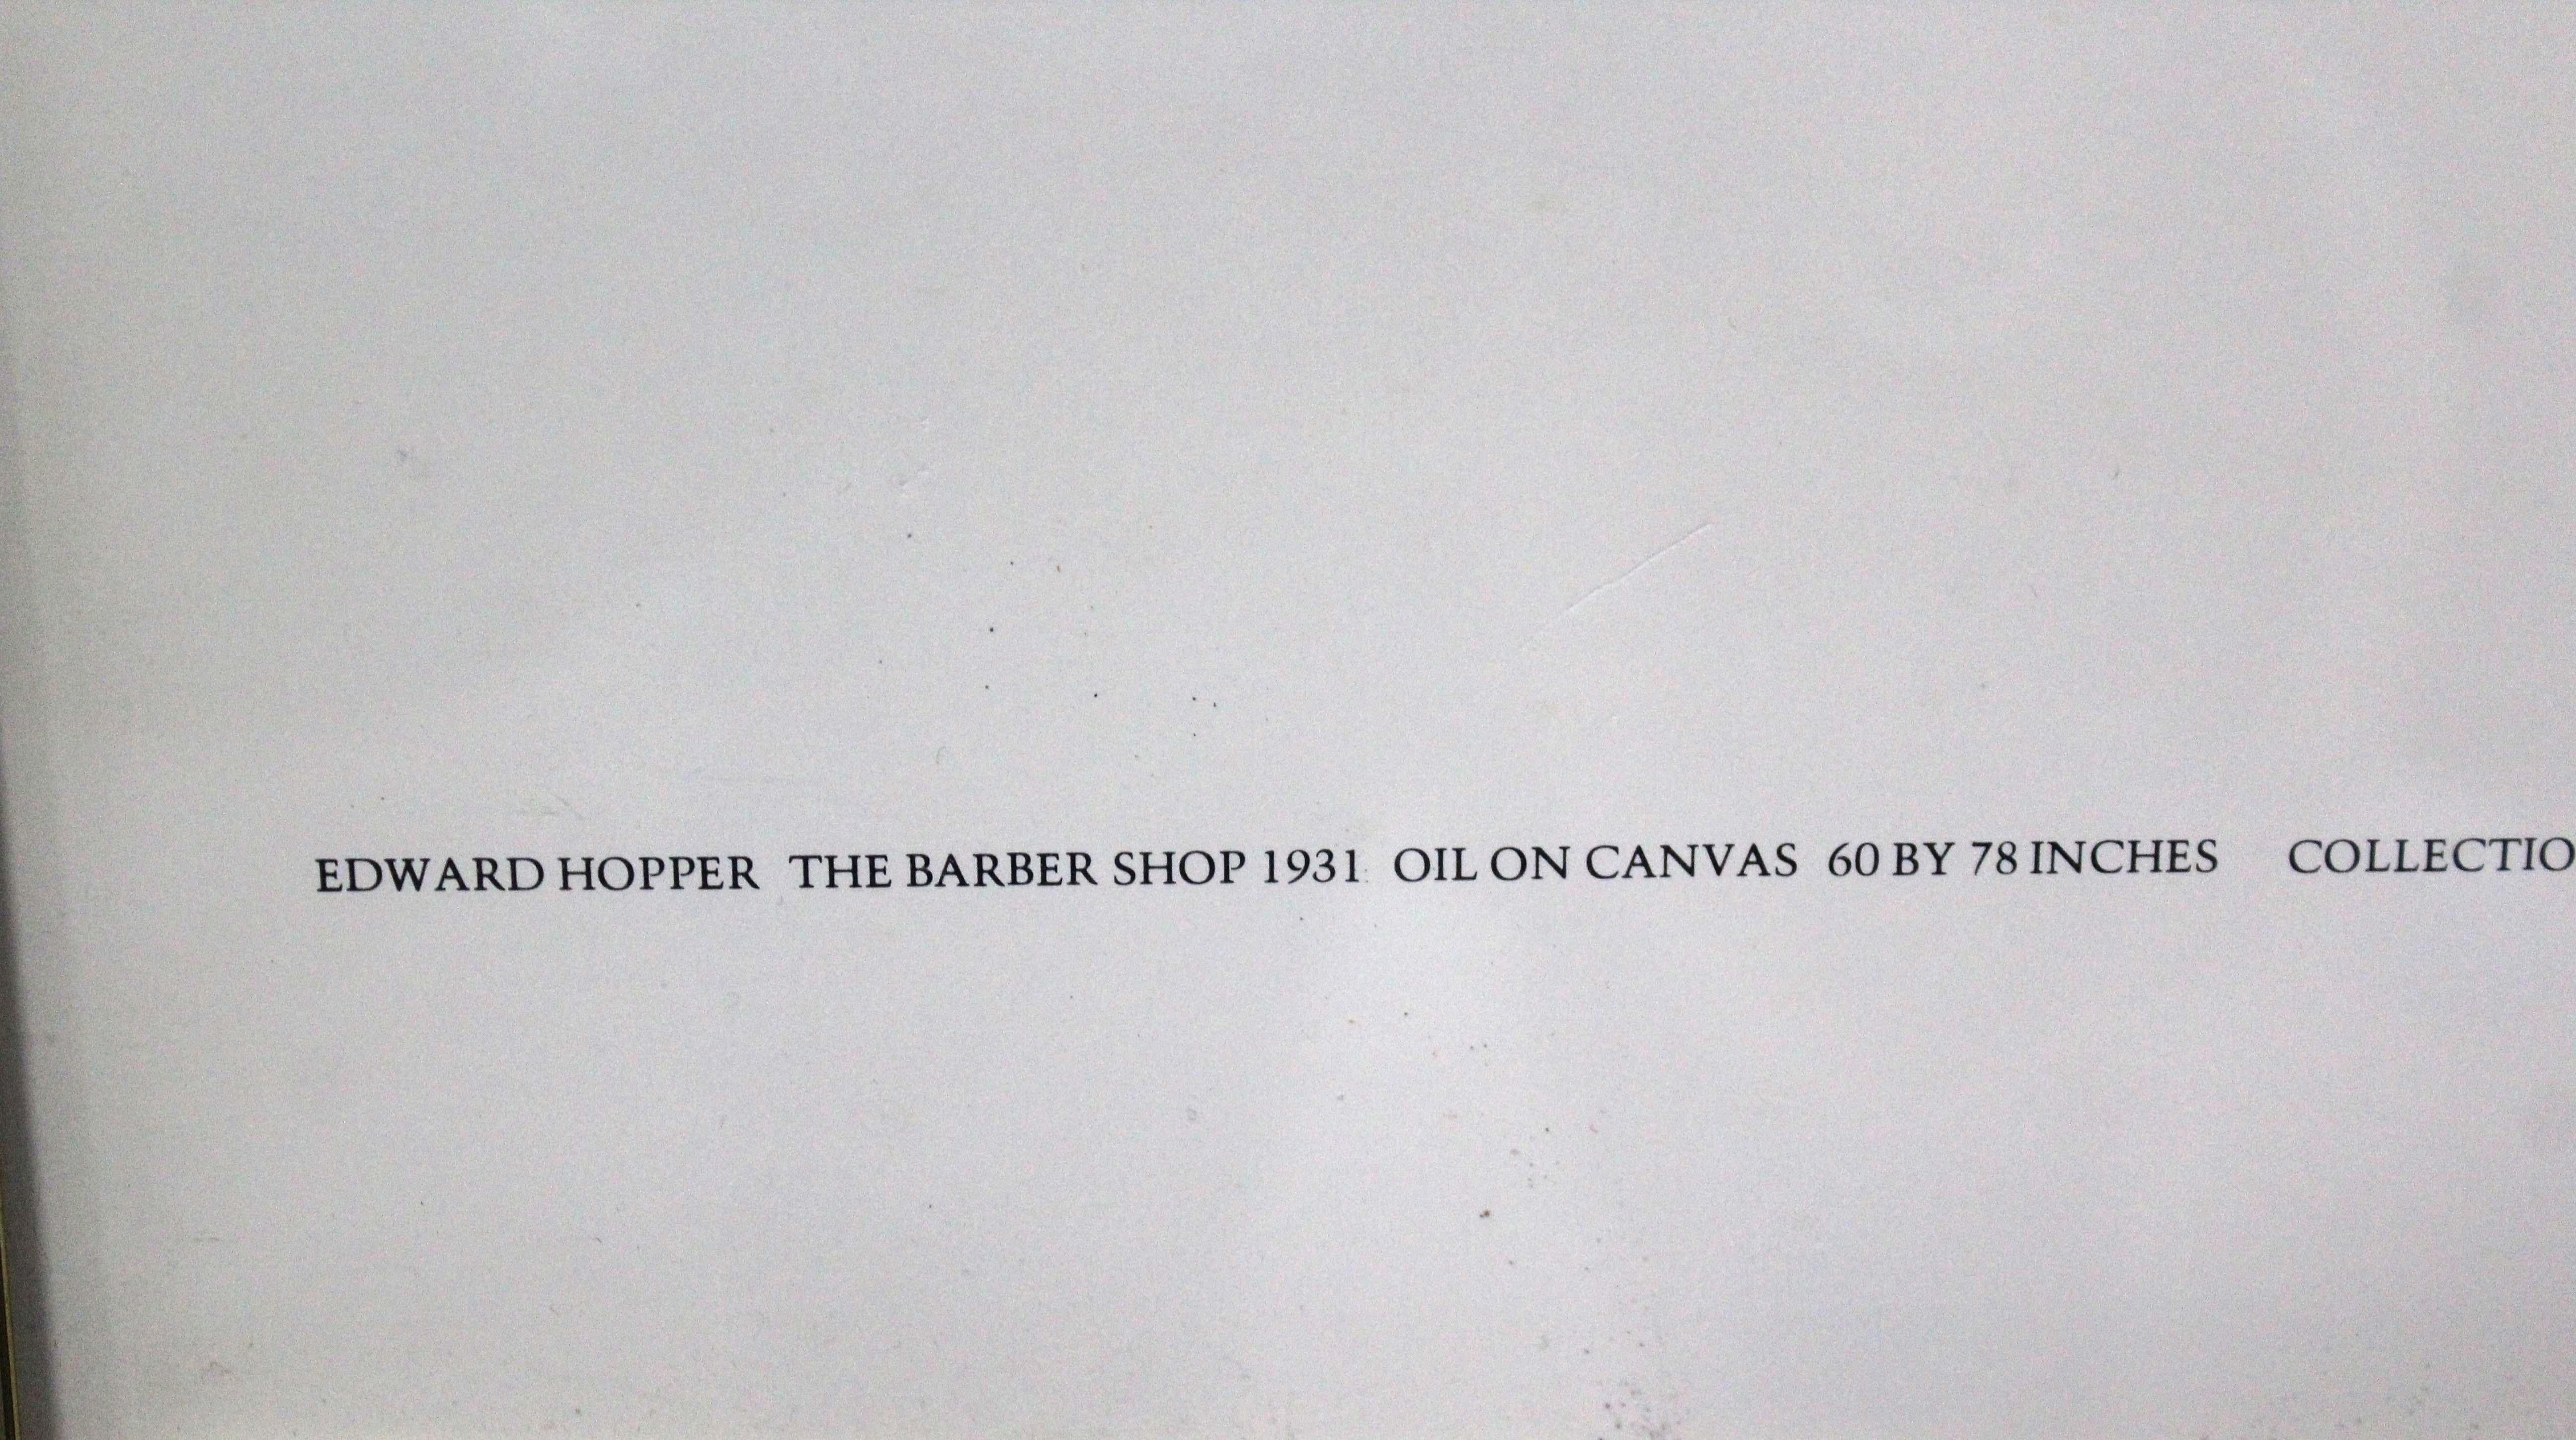 Edward Hopper The Barber Shop Neuberger Museum Vintage Exhibition Poster 1981 For Sale 2